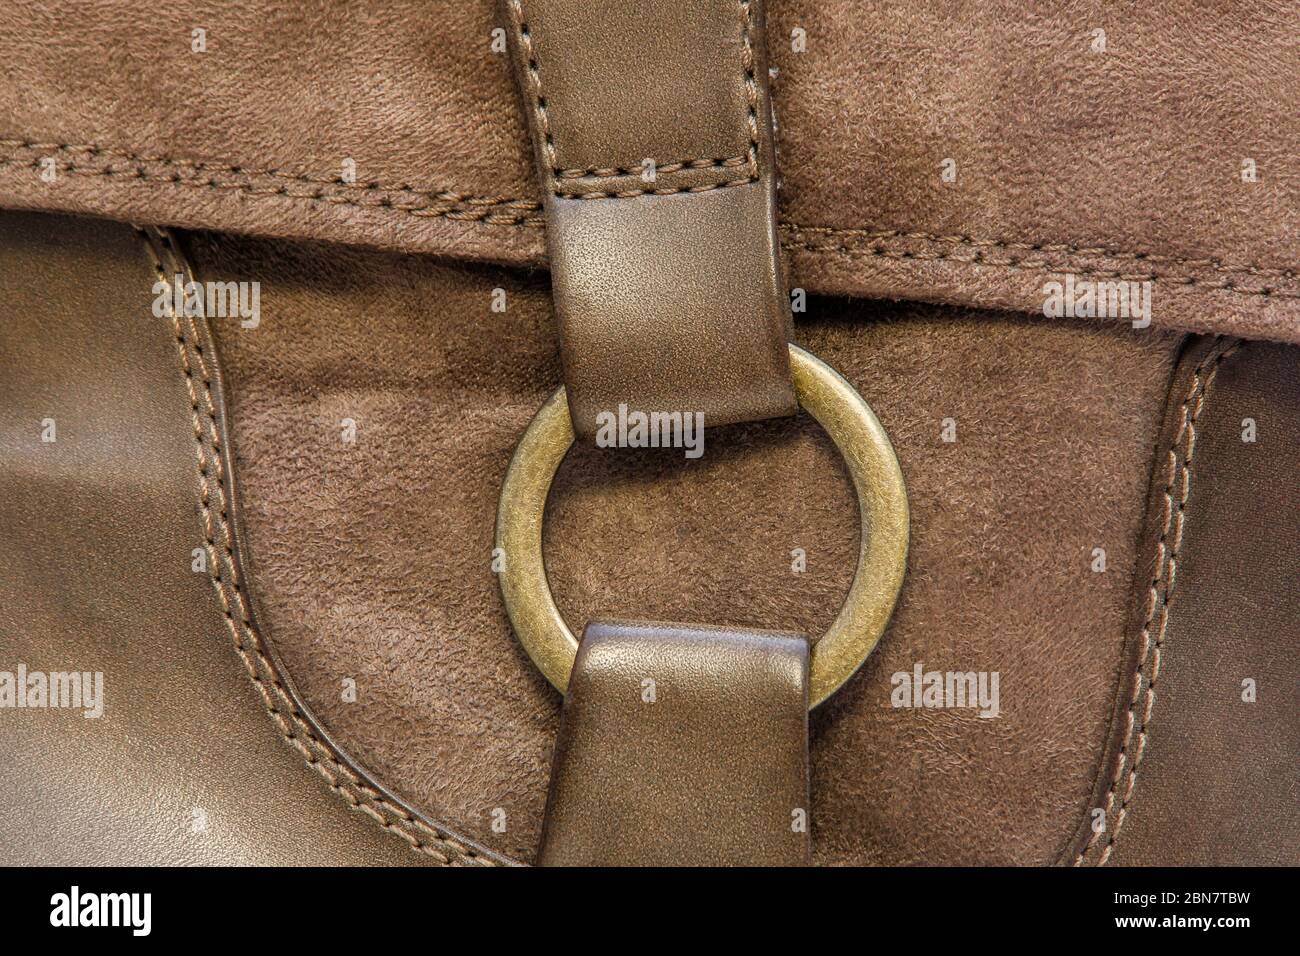 image d'un anneau en cuivre sur une botte en cuir Banque D'Images